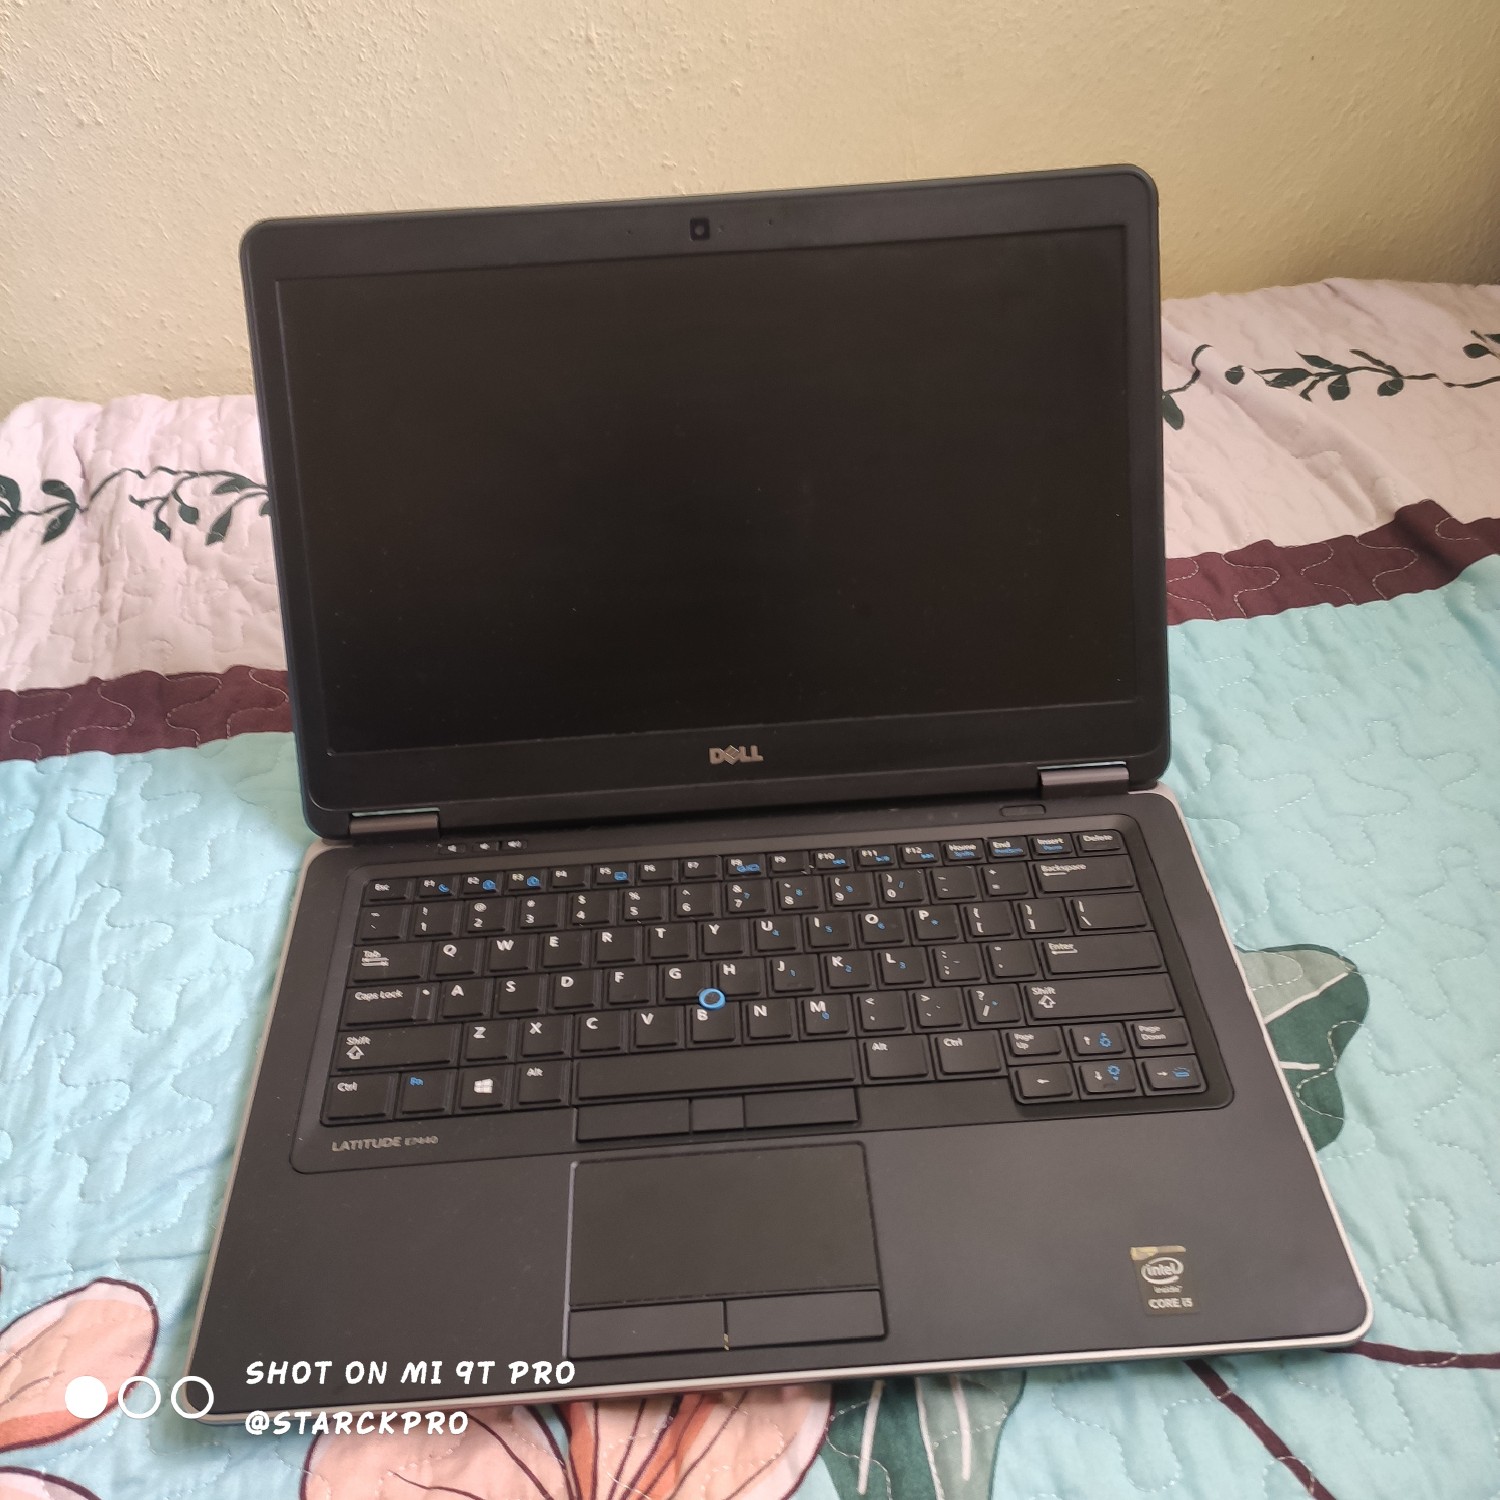 computadoras y laptops - Dell latitude E7440
Laptop ultrafina y ligera
Procesador i5 Cuarta Generación